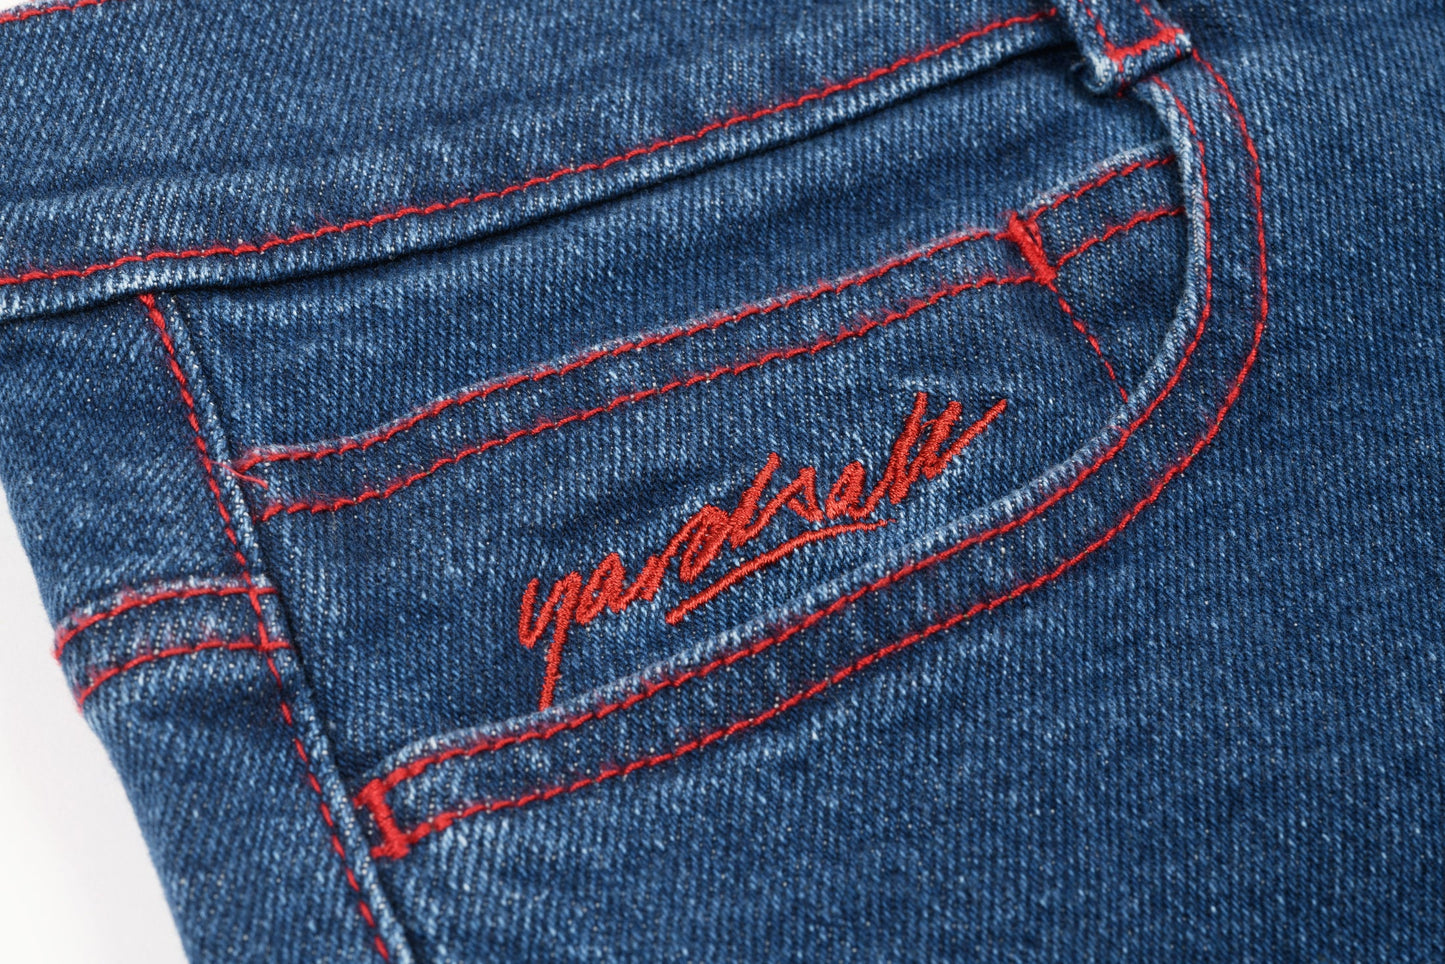 Yardsale Goblin Jeans (Denim)